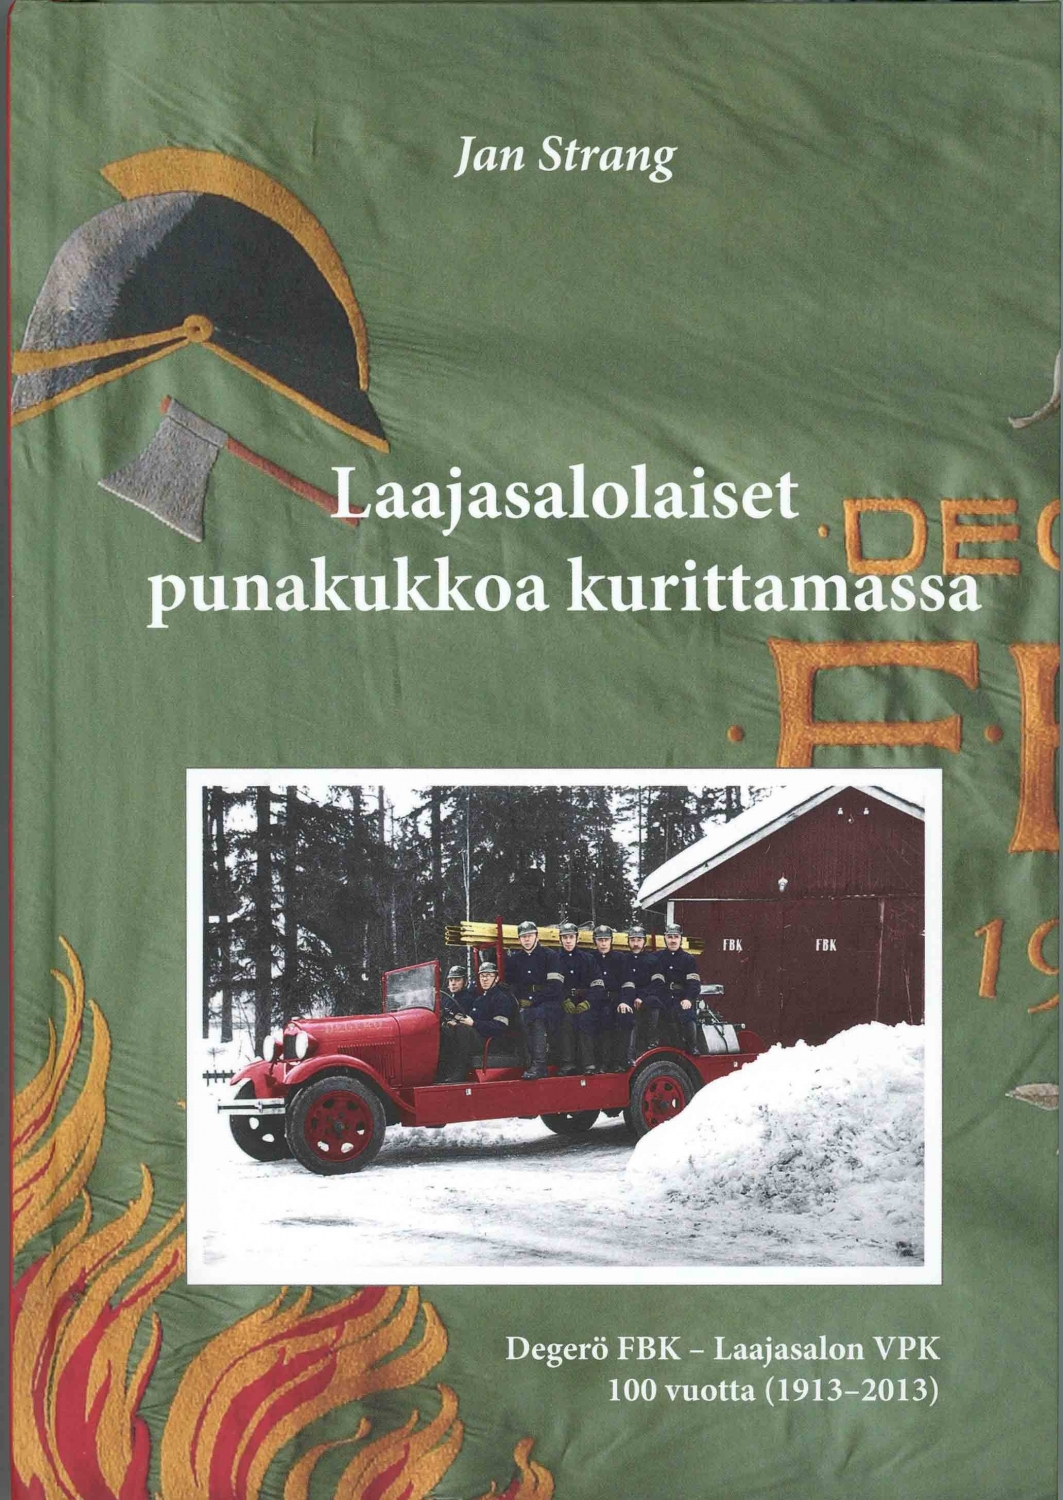 Strang, Jan. ym. Laajasalolaiset punakukkoa kurittamassa : Degerö FBK - Laajasalon VPK 100 vuotta 1913–2013 